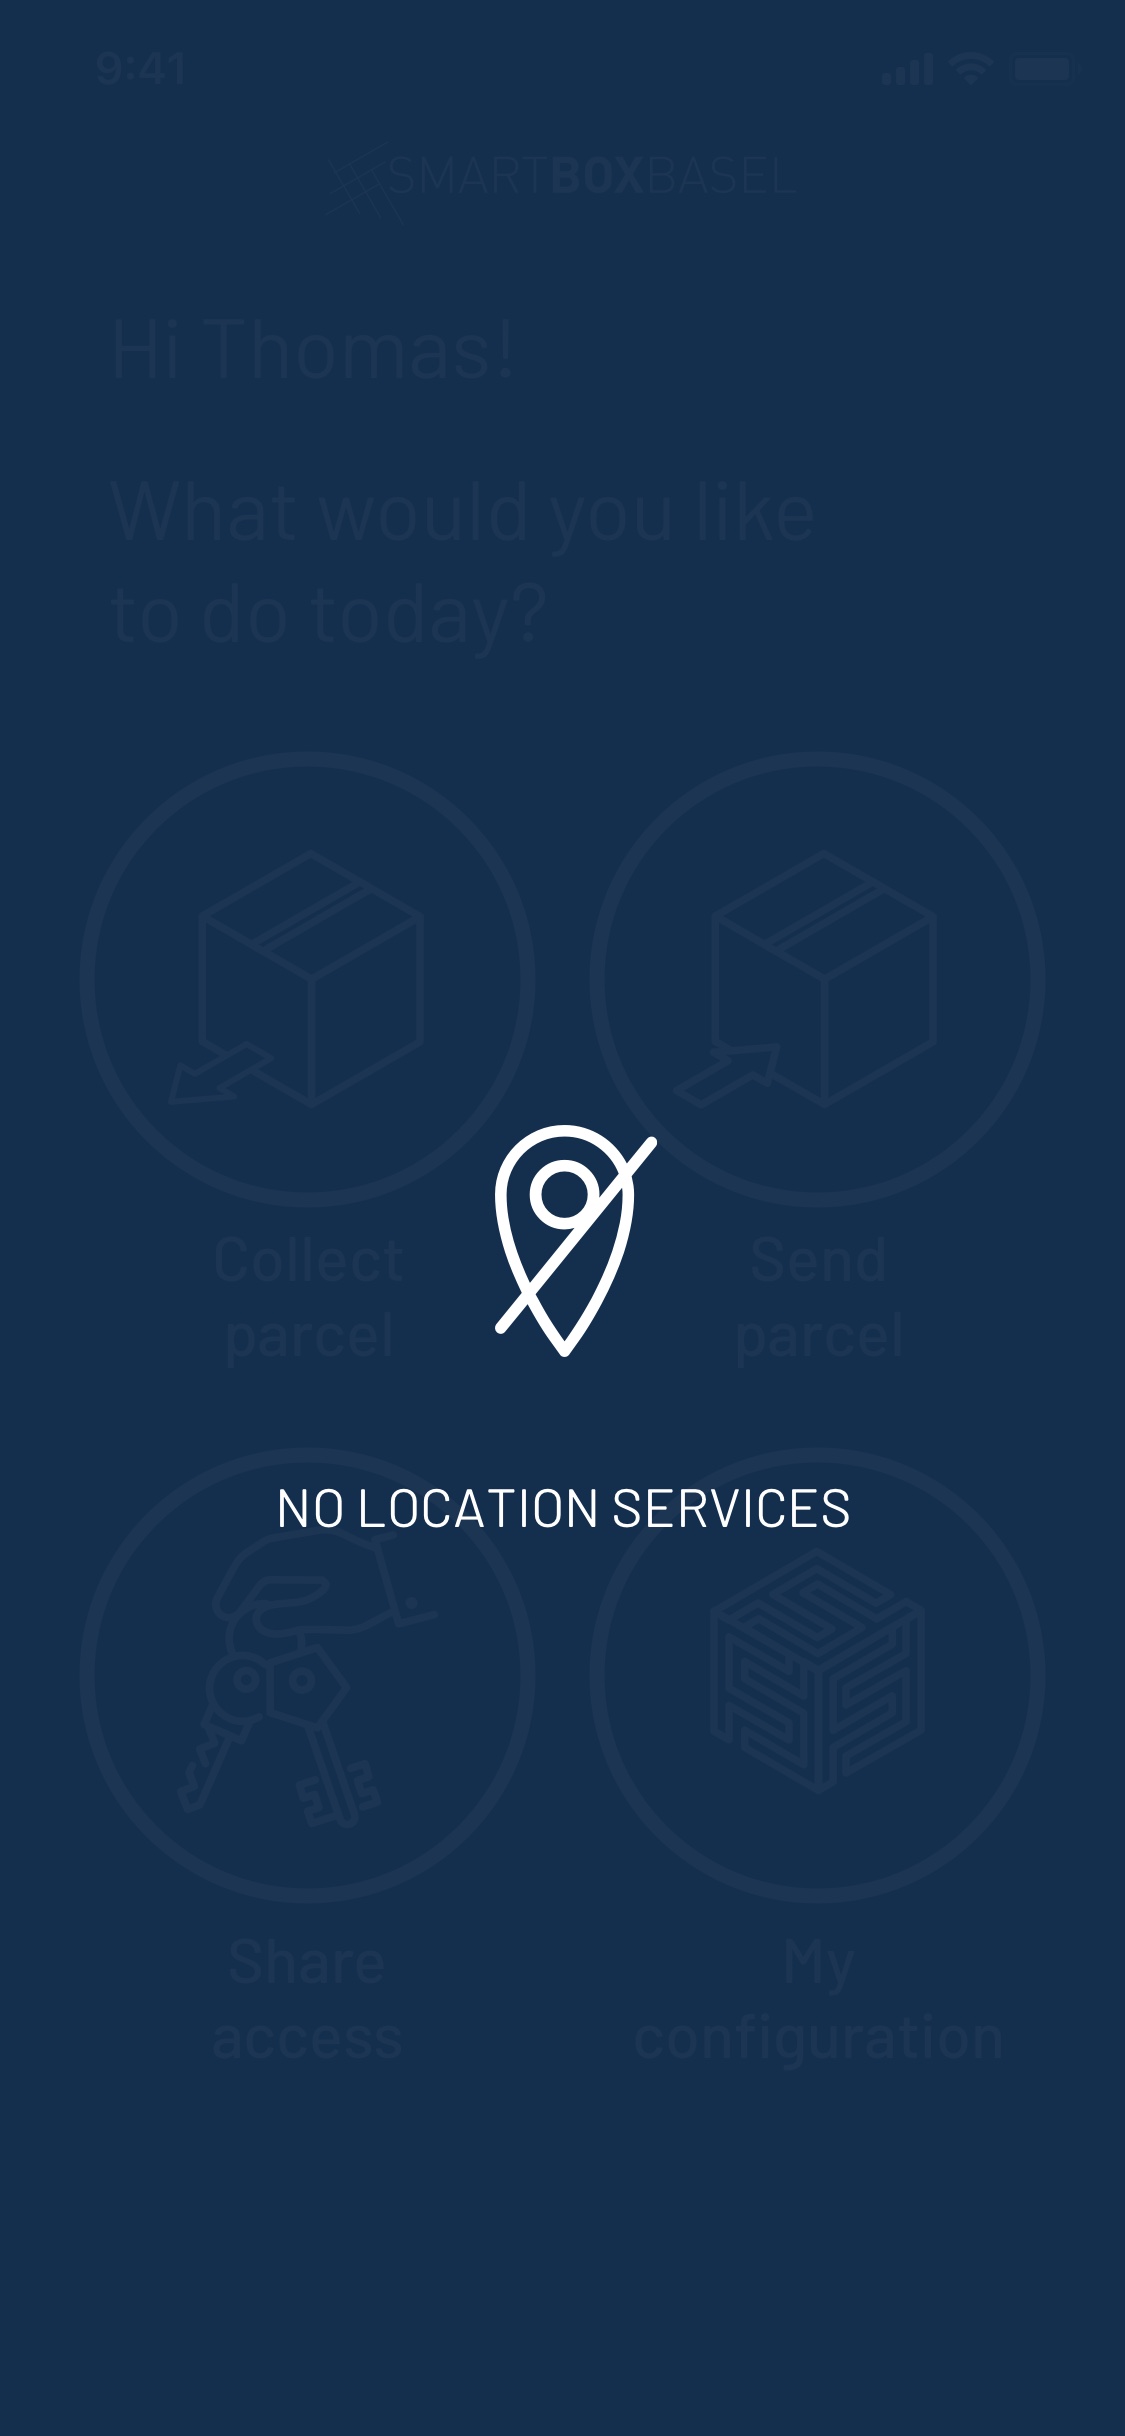 No location services message